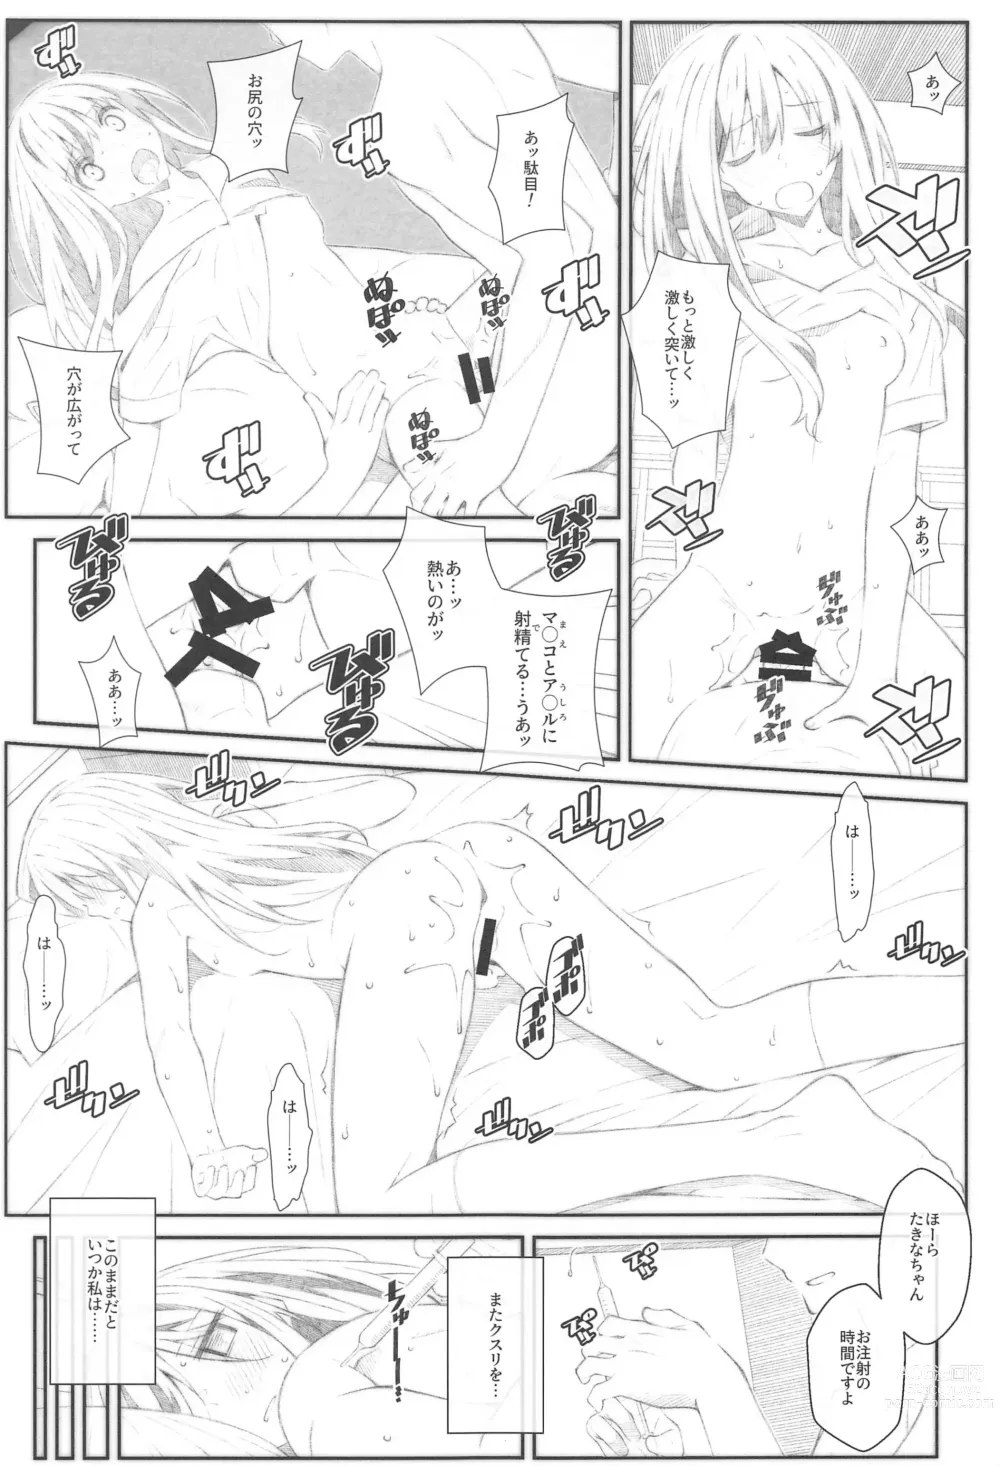 Page 4 of doujinshi TYPE-68b